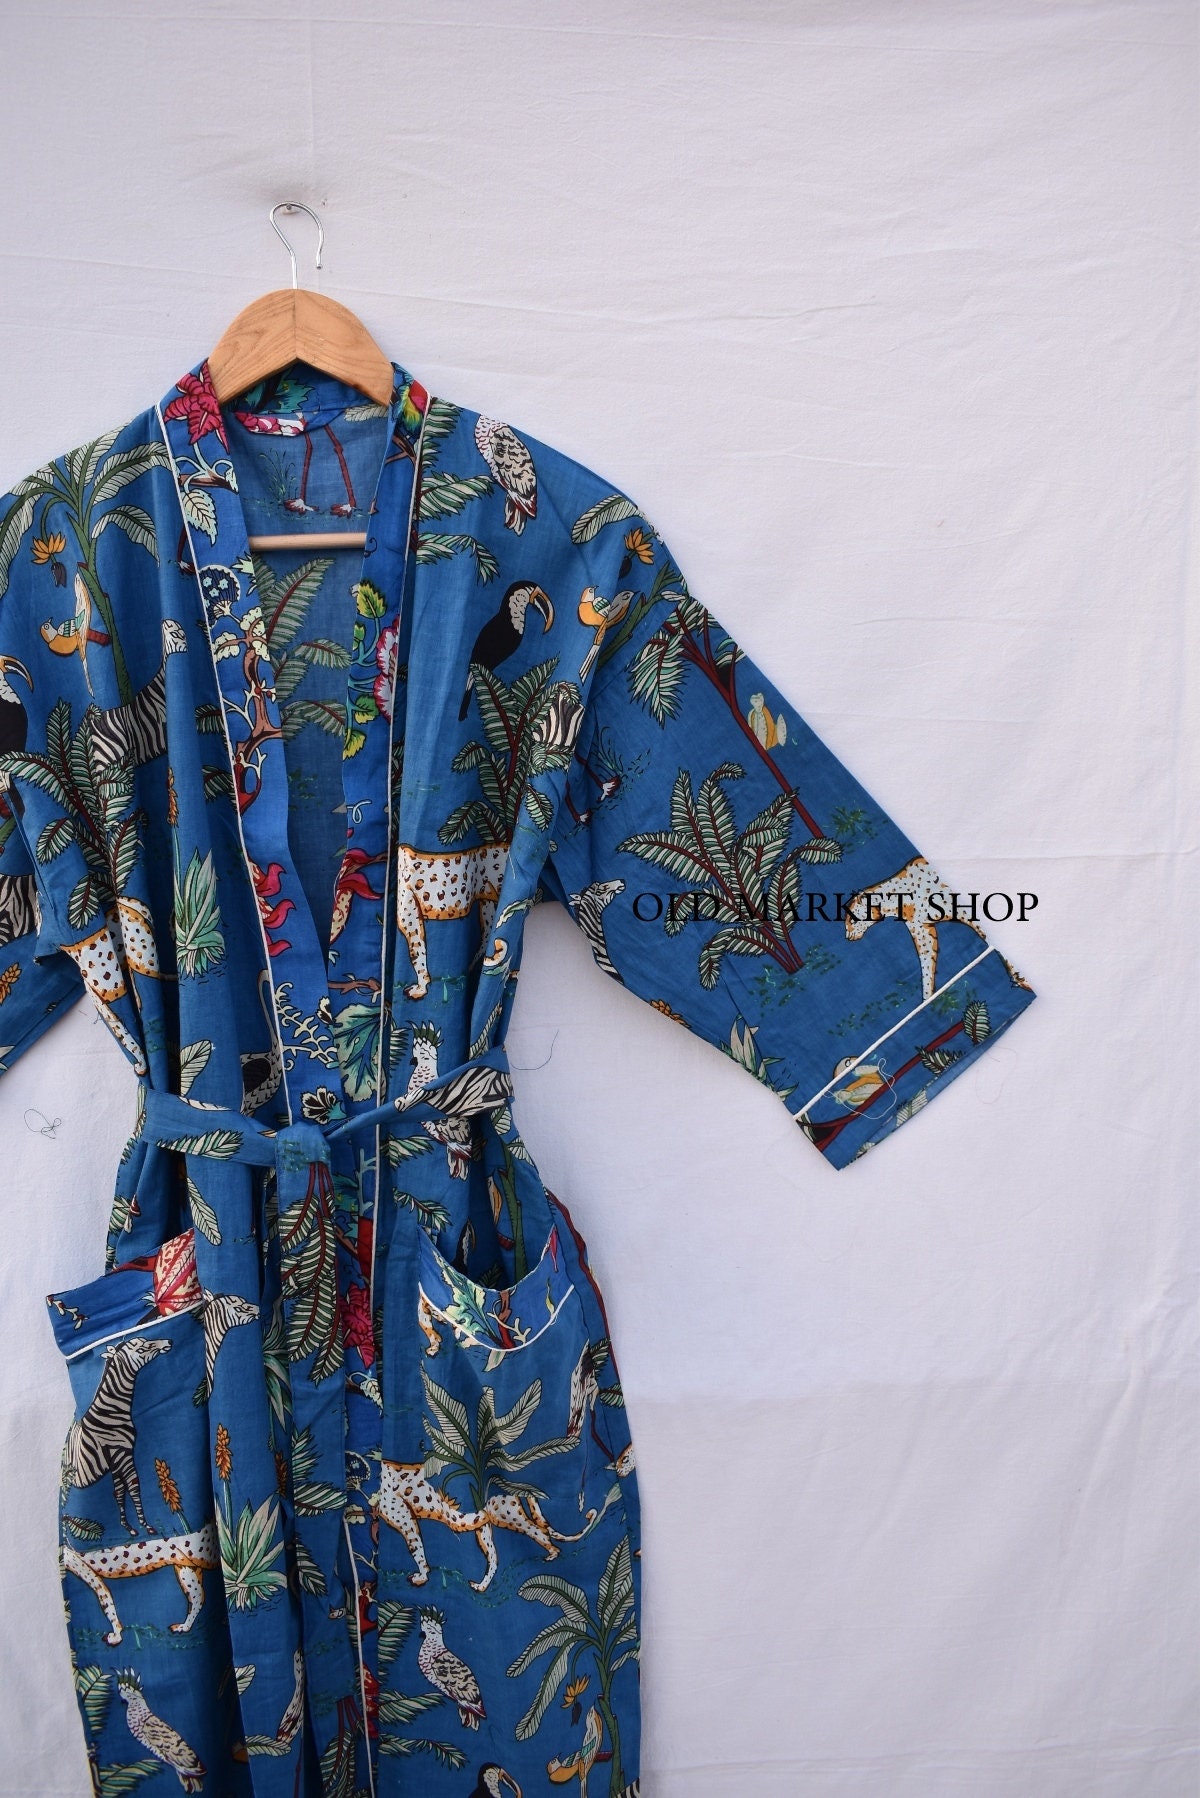 Kimono Farfalla Vintage Abbigliamento Abbigliamento genere neutro per adulti Pigiami e vestaglie Vestaglie Cotone Stampato Farfalla Bianca Fodera Rayon Bianco Trasparente Kimono Giapponese Taglia Media 